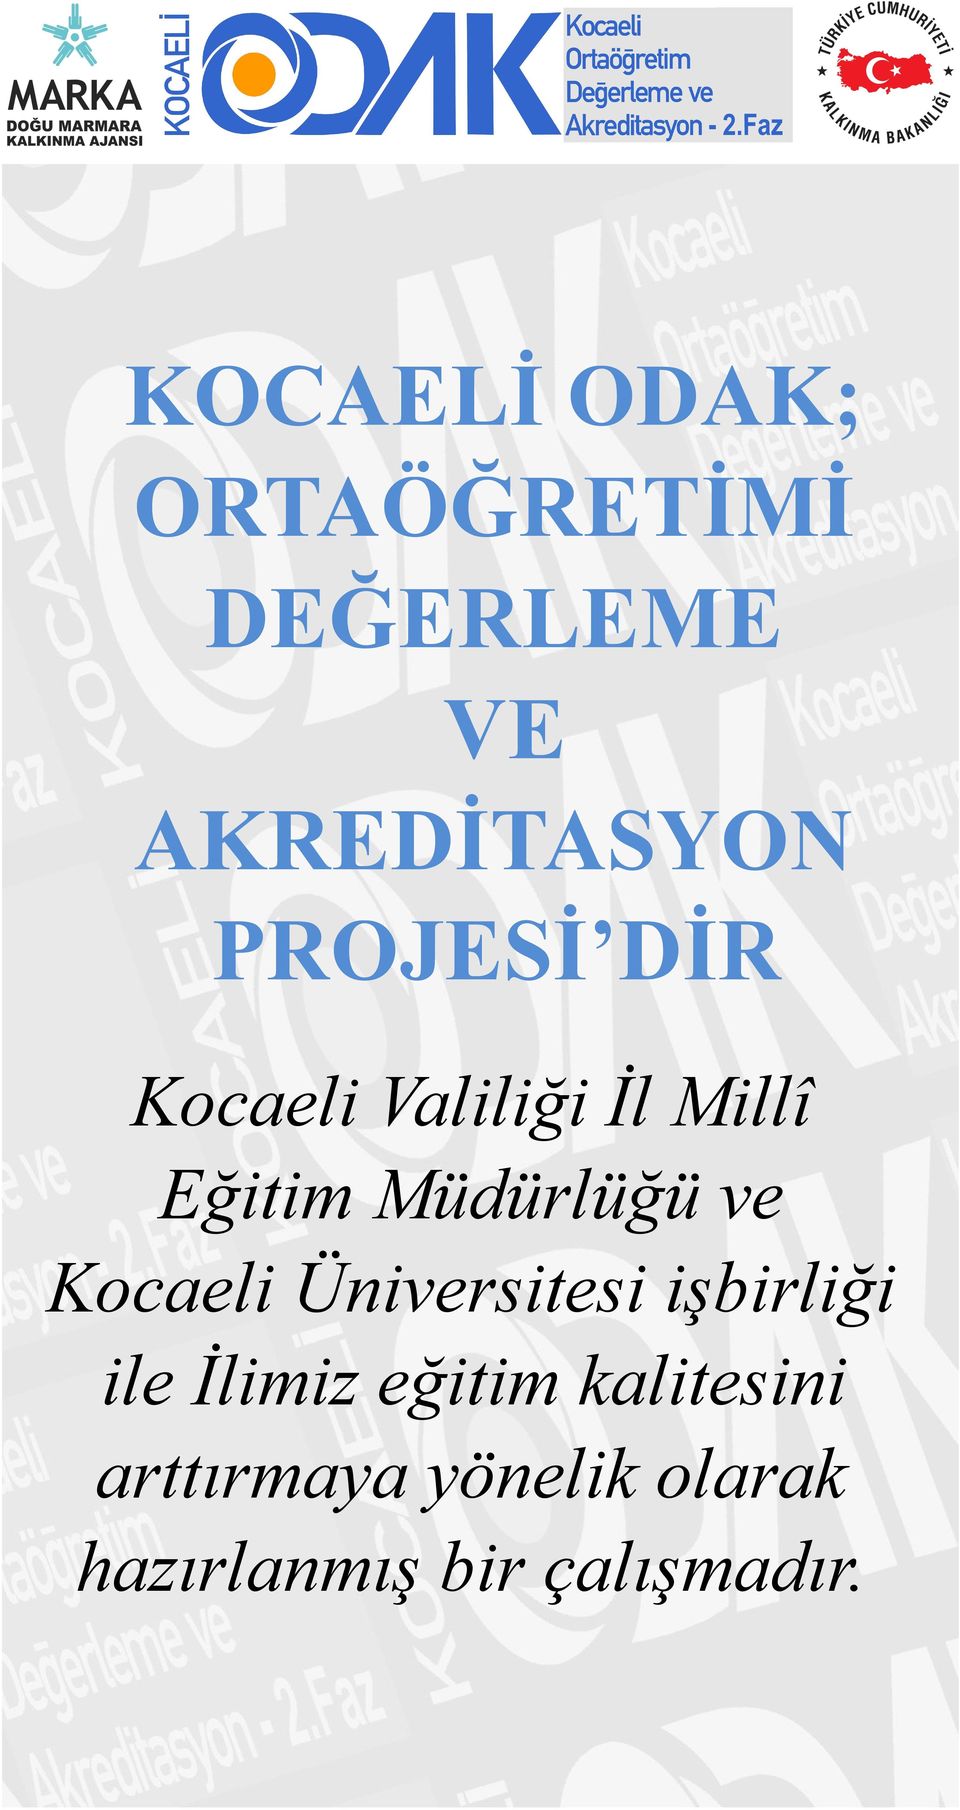 ve Kocaeli Üniversitesi işbirliği ile İlimiz eğitim